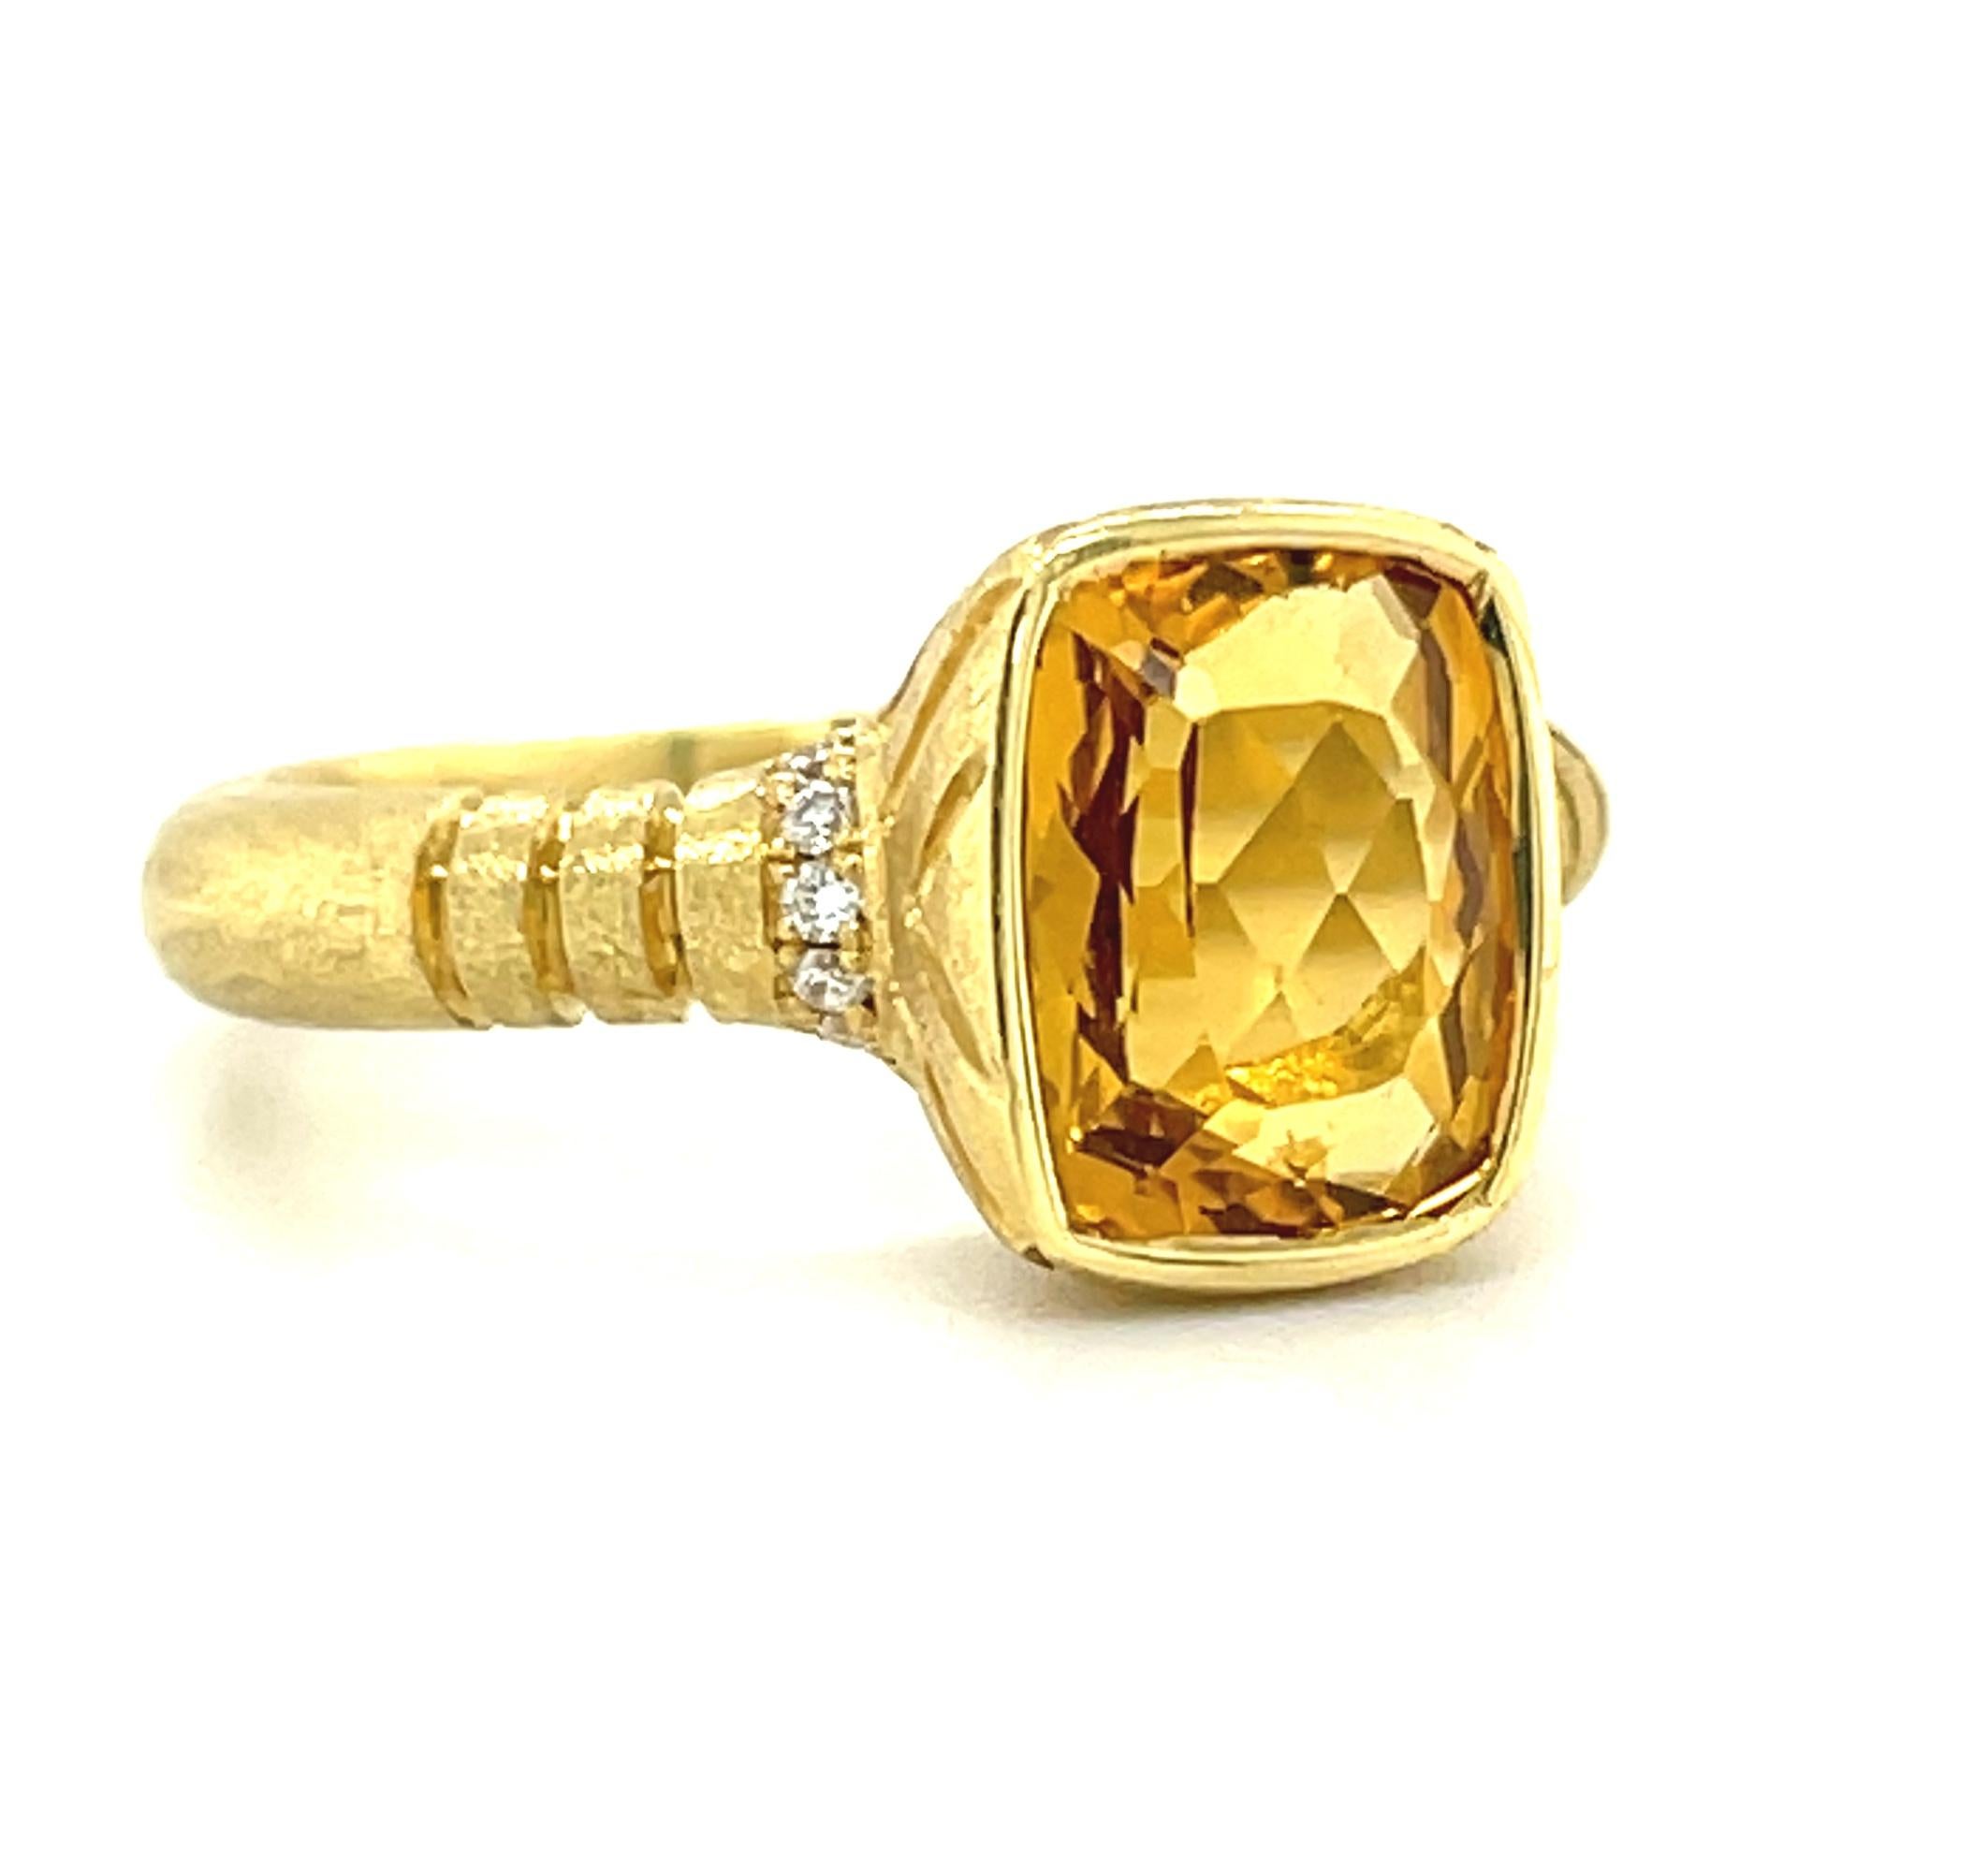 3grm gold ring design